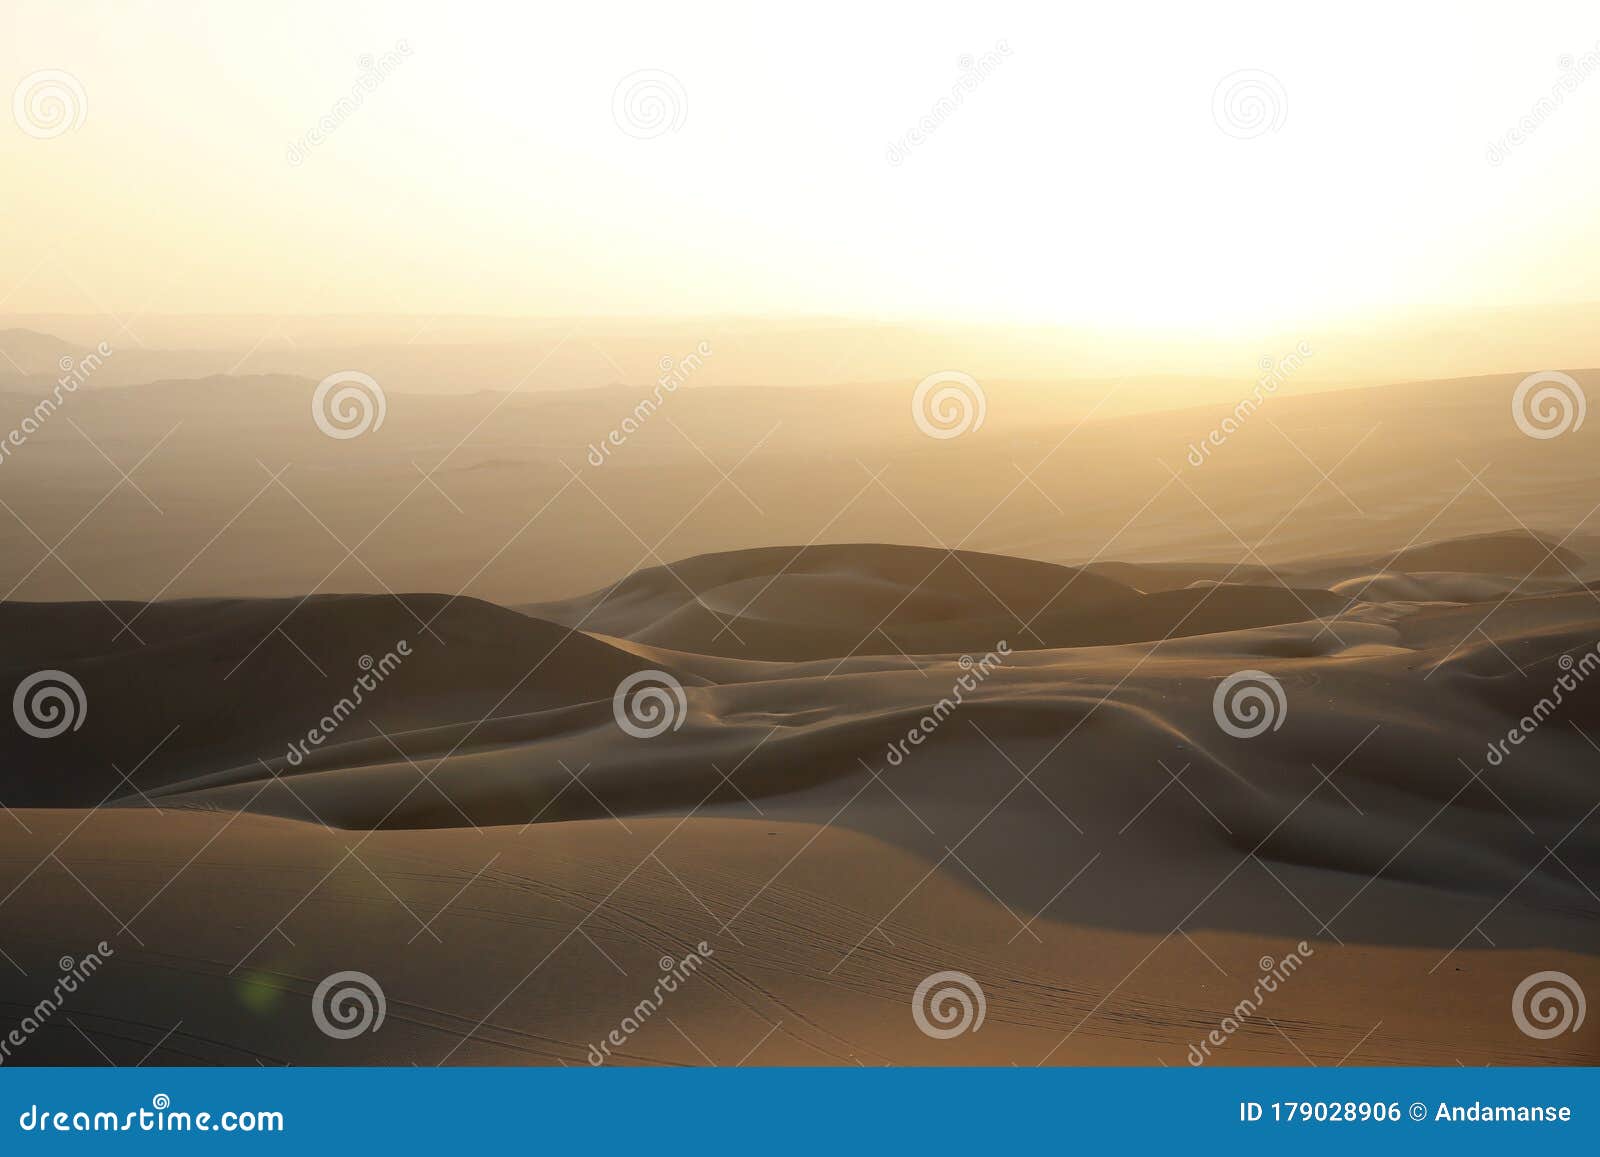 sunset over ica desert